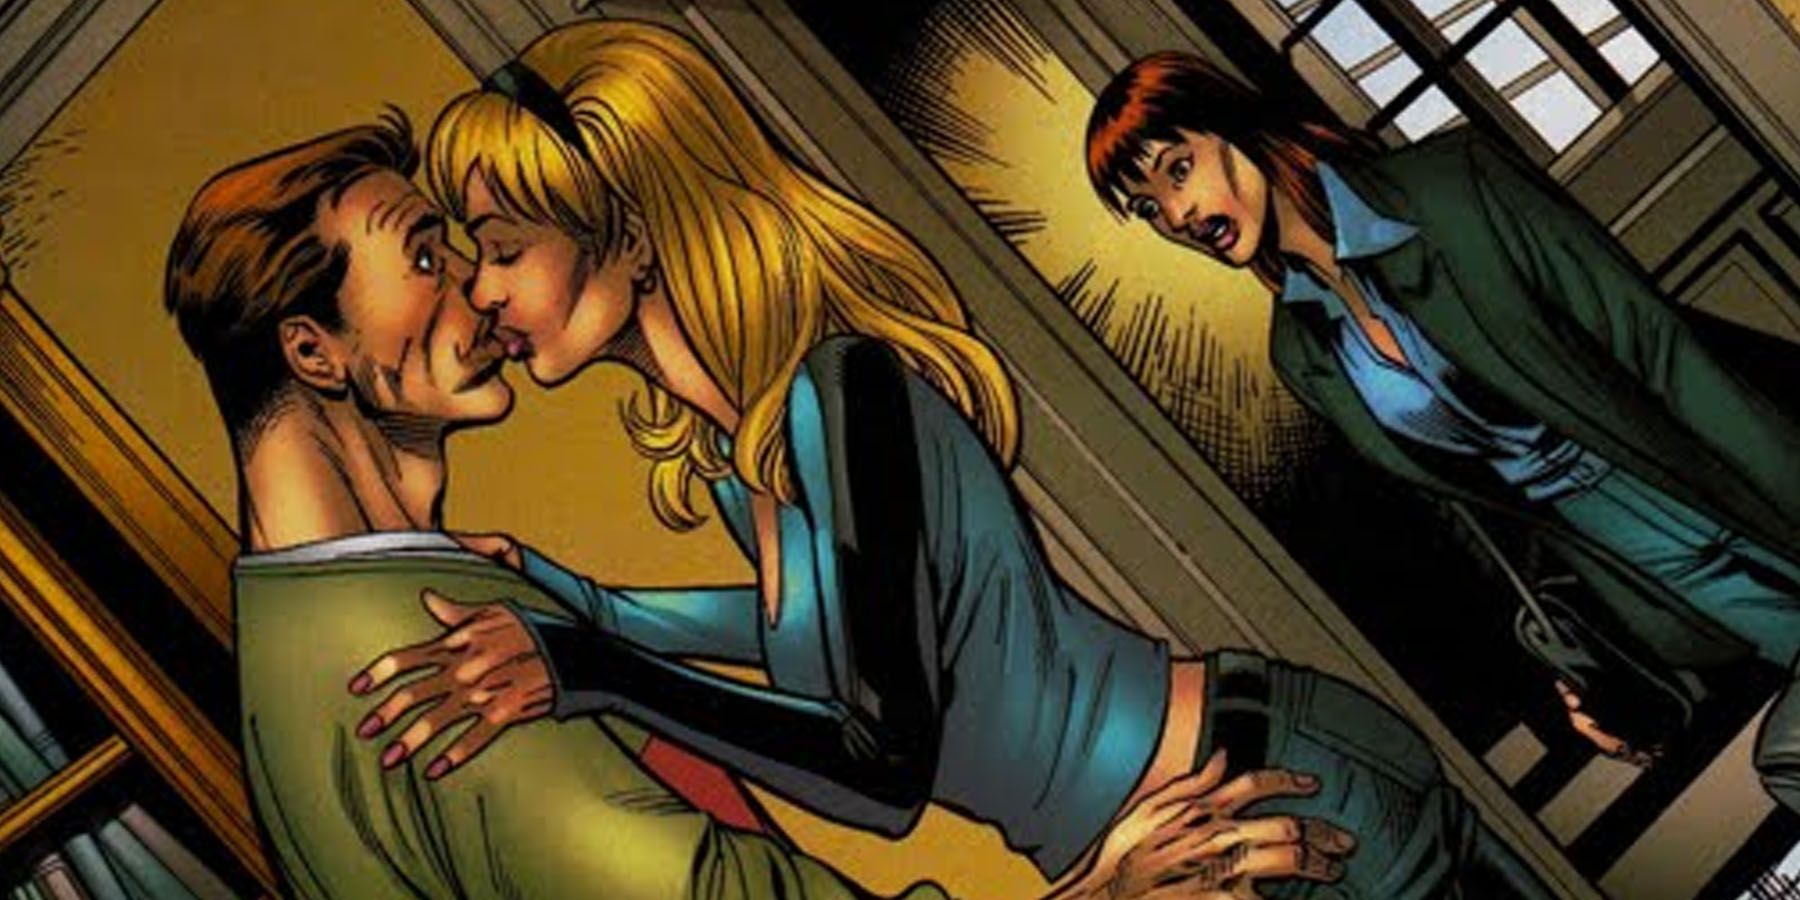 Sarah Stacy kisses Peter Parker